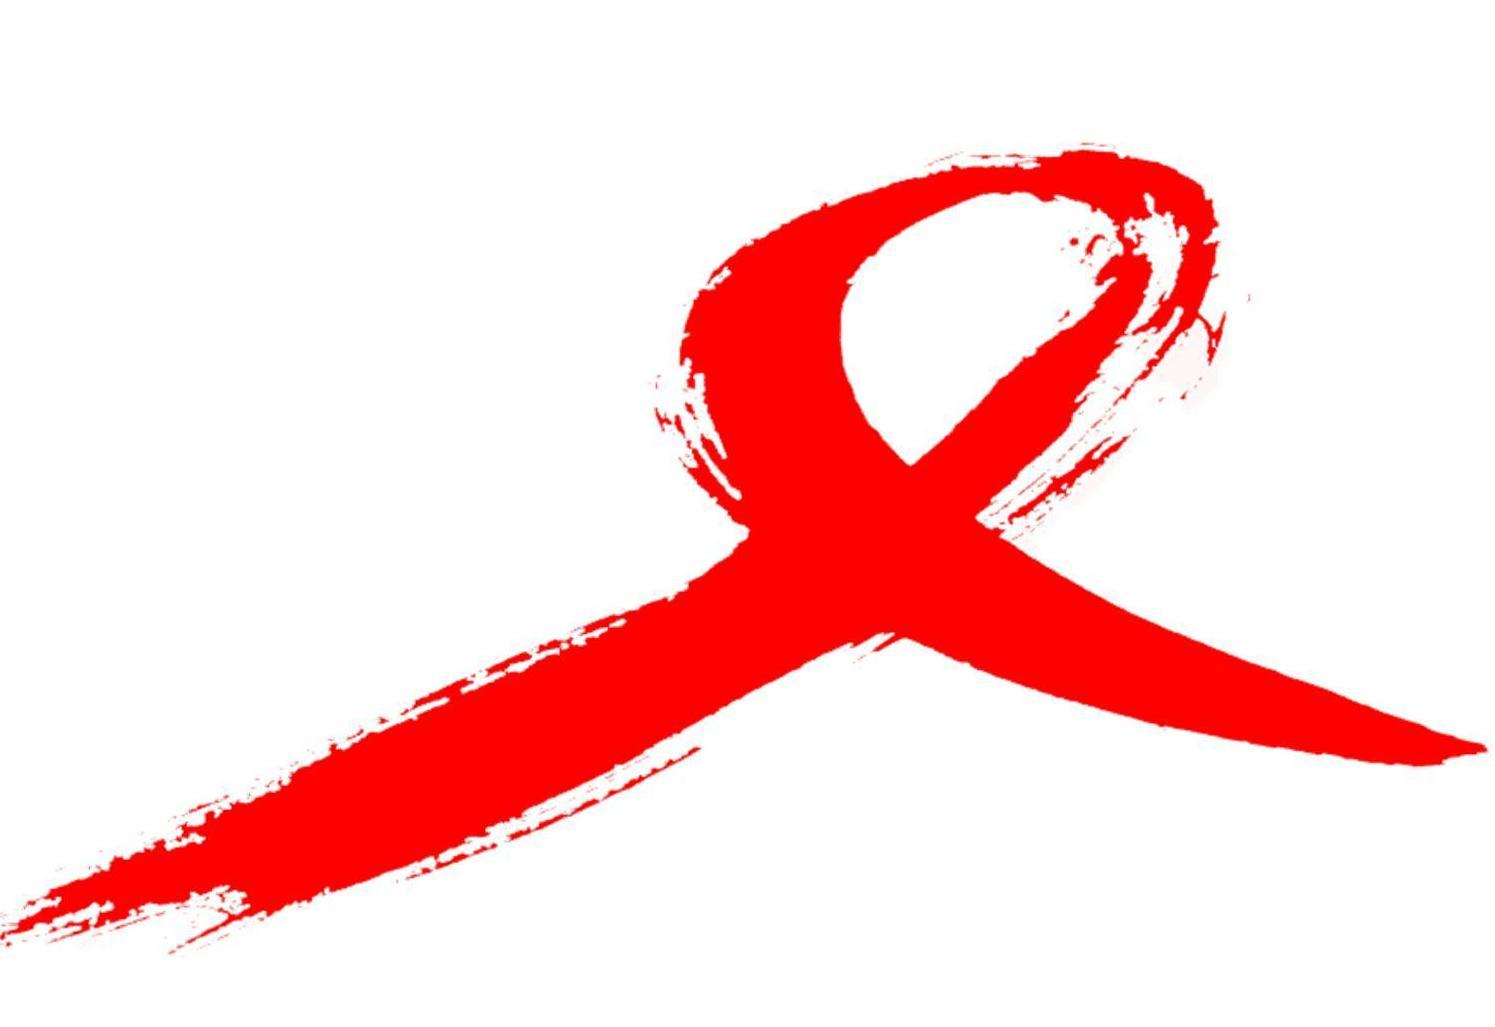 L’Oms lancia un allarme Aids. – “I gay prendano farmaci preventivi” 1